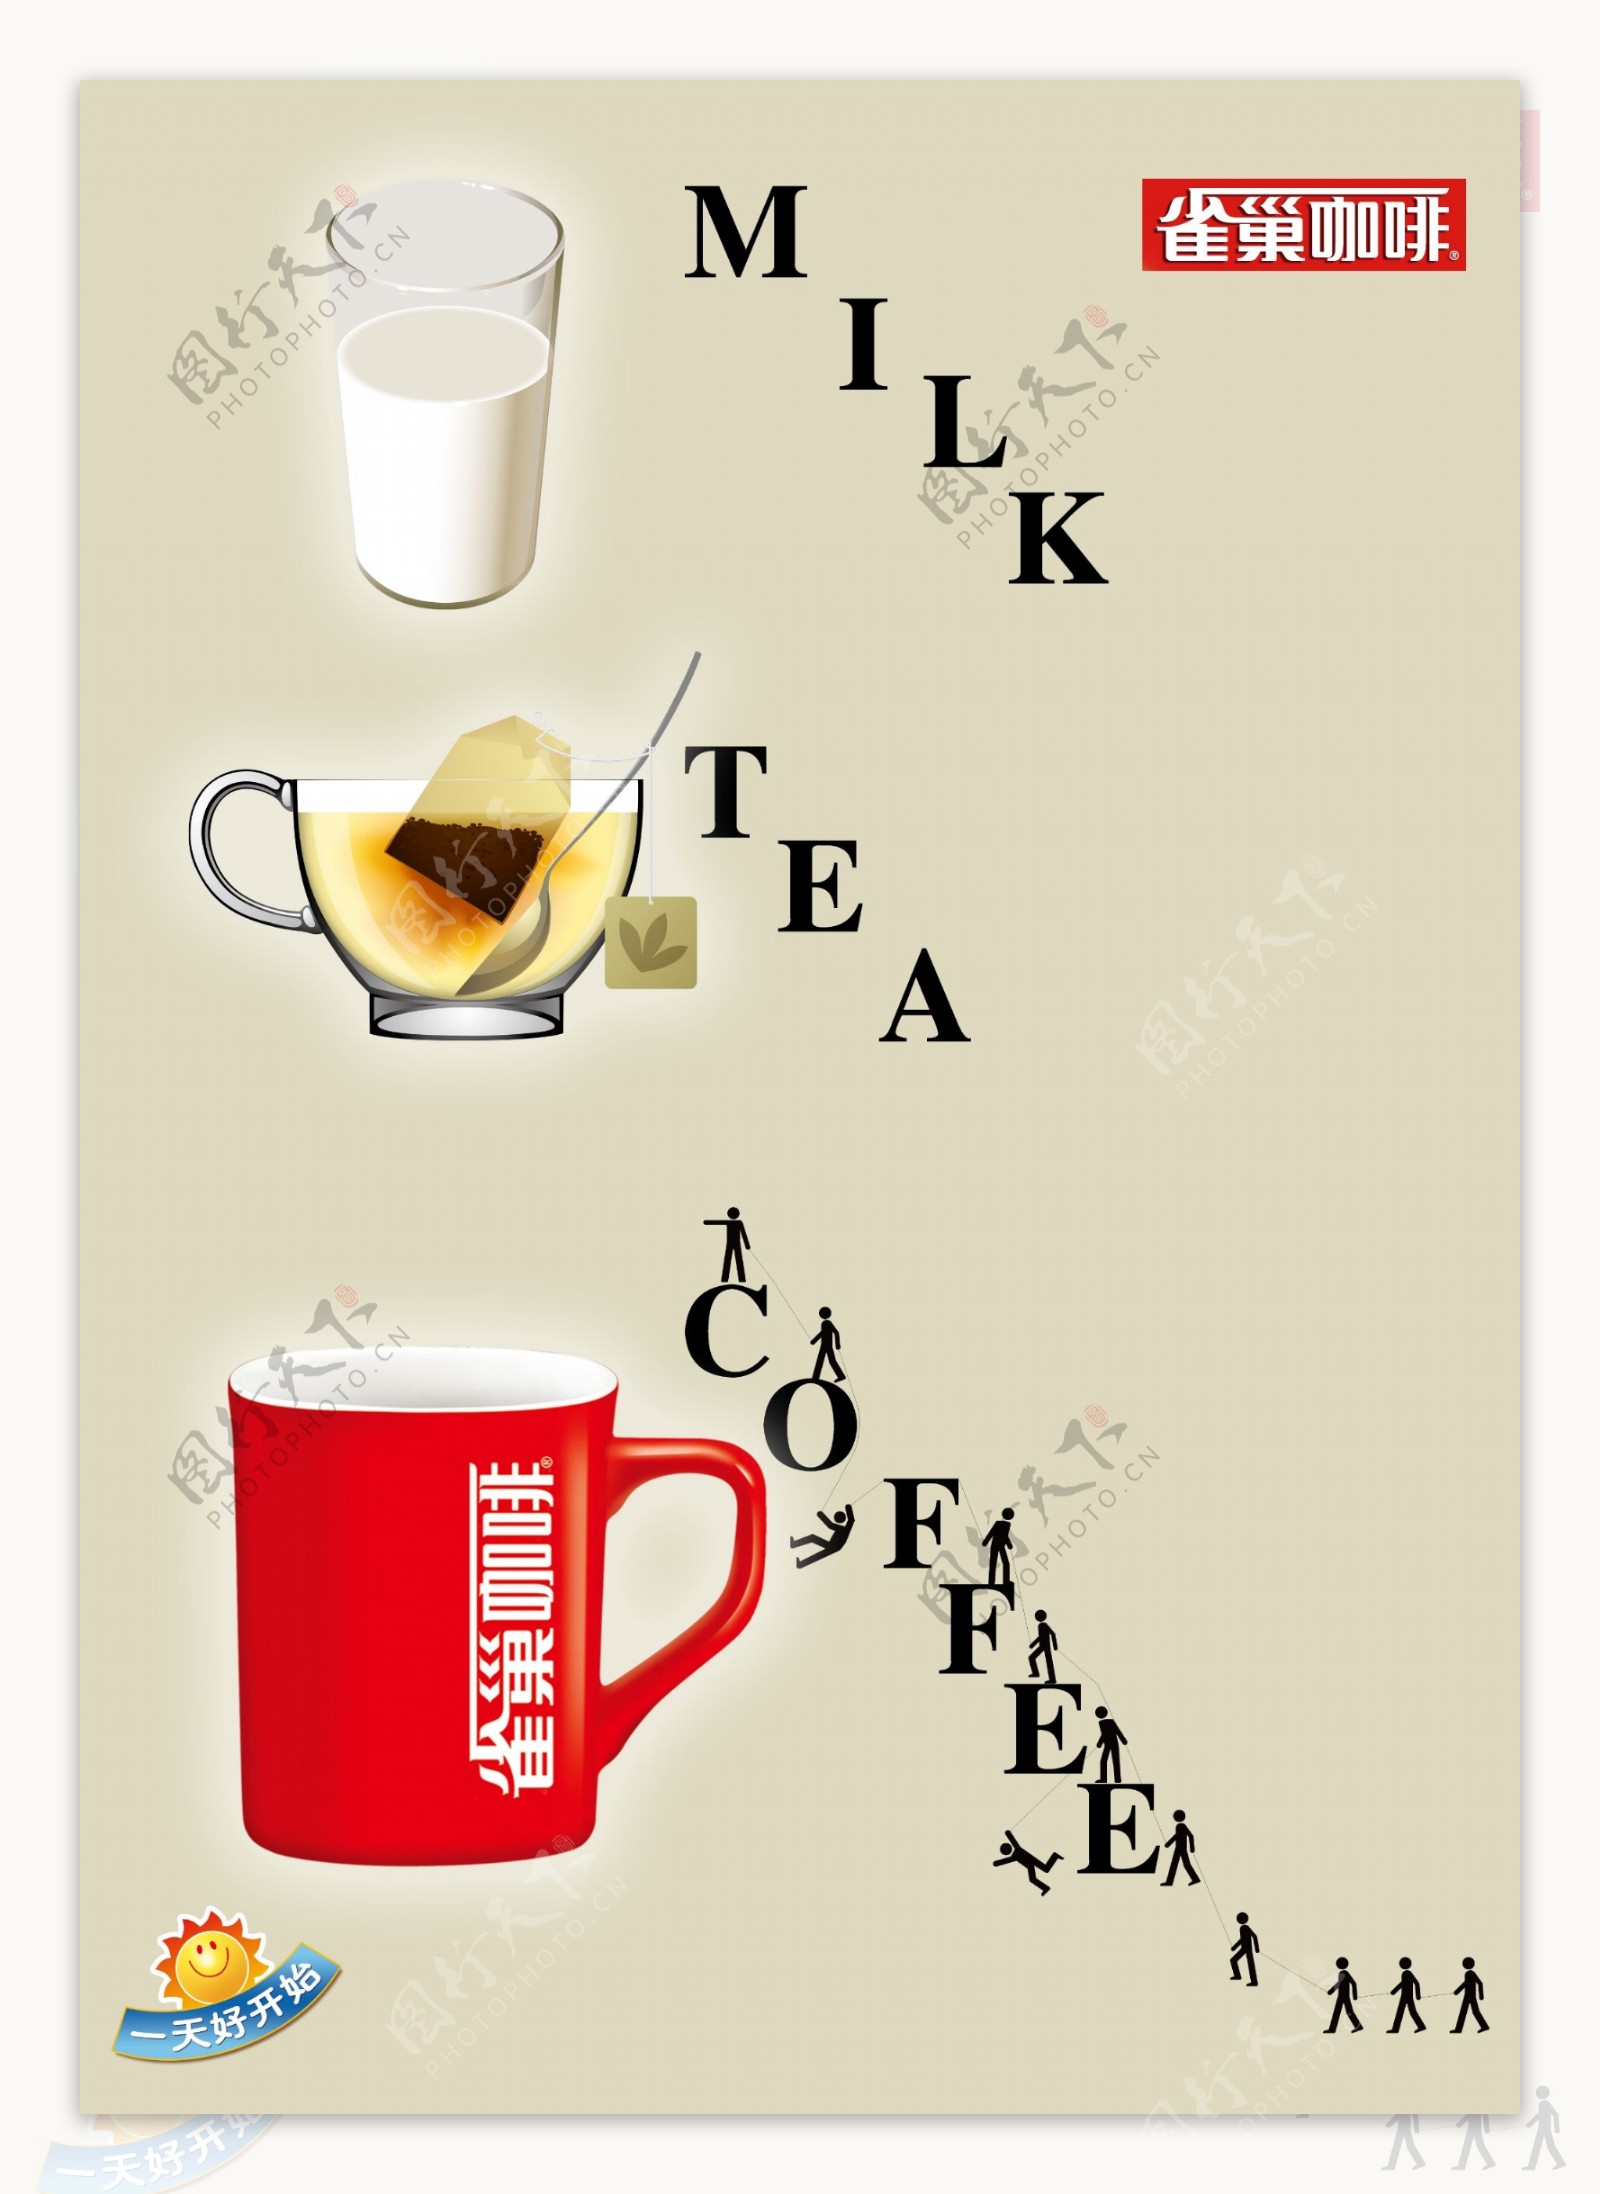 雀巢咖啡海报图片